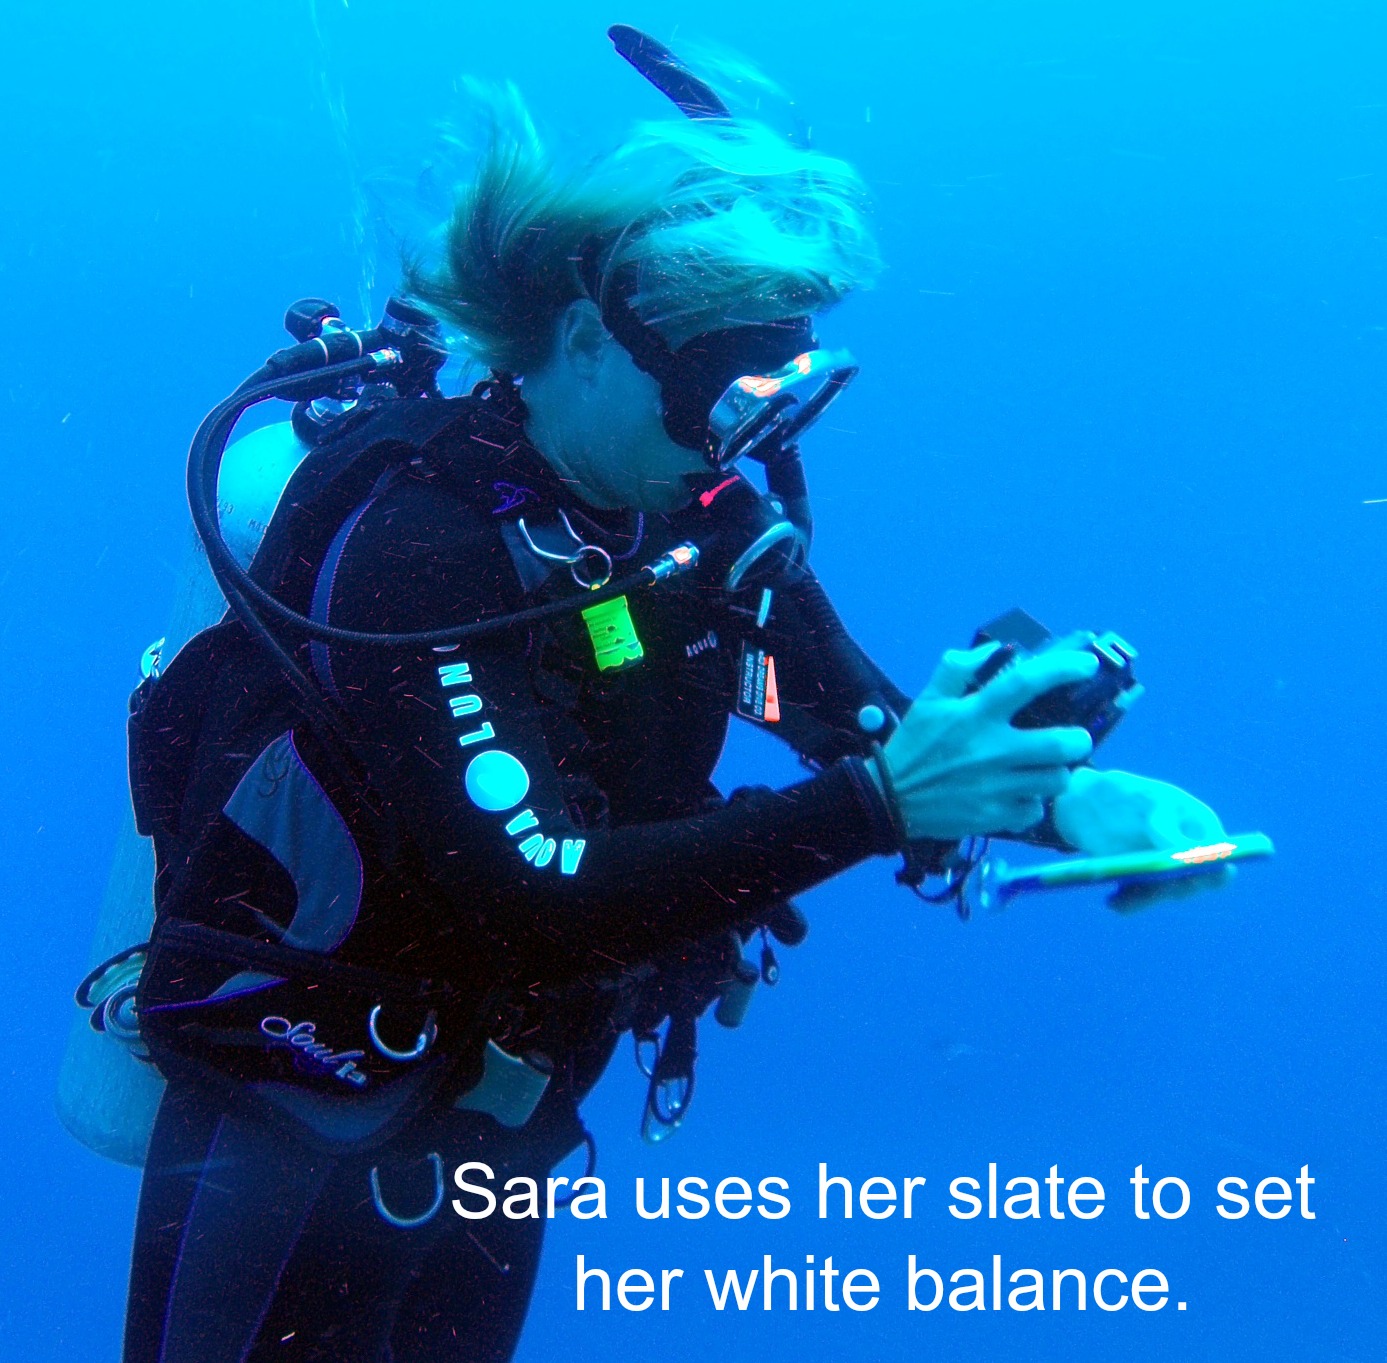 Sara sets white balance